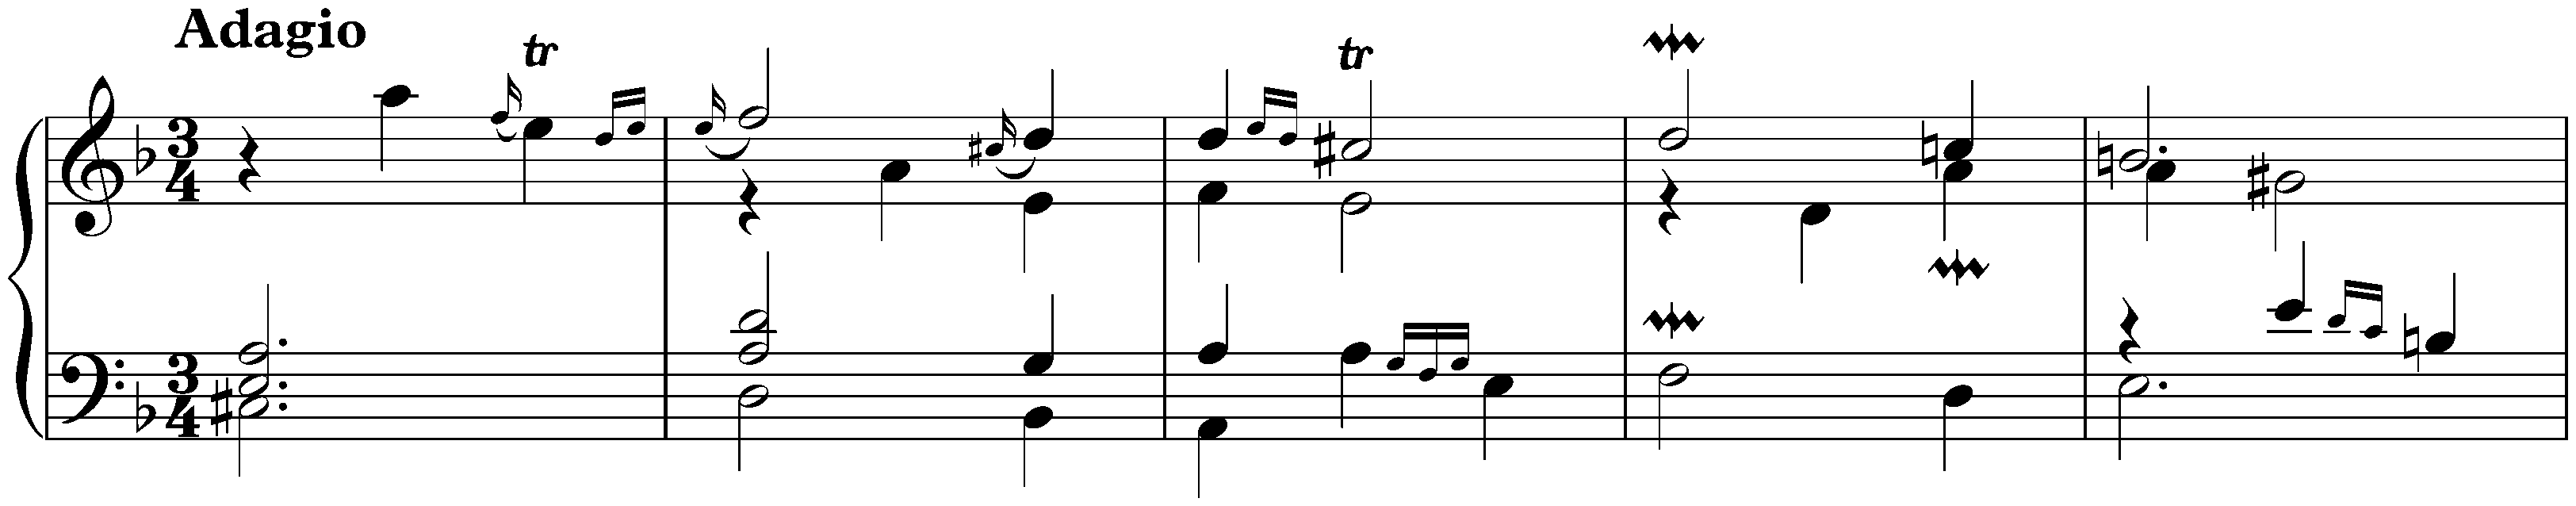 Suite in F major, HWV 427; 3. Adagio